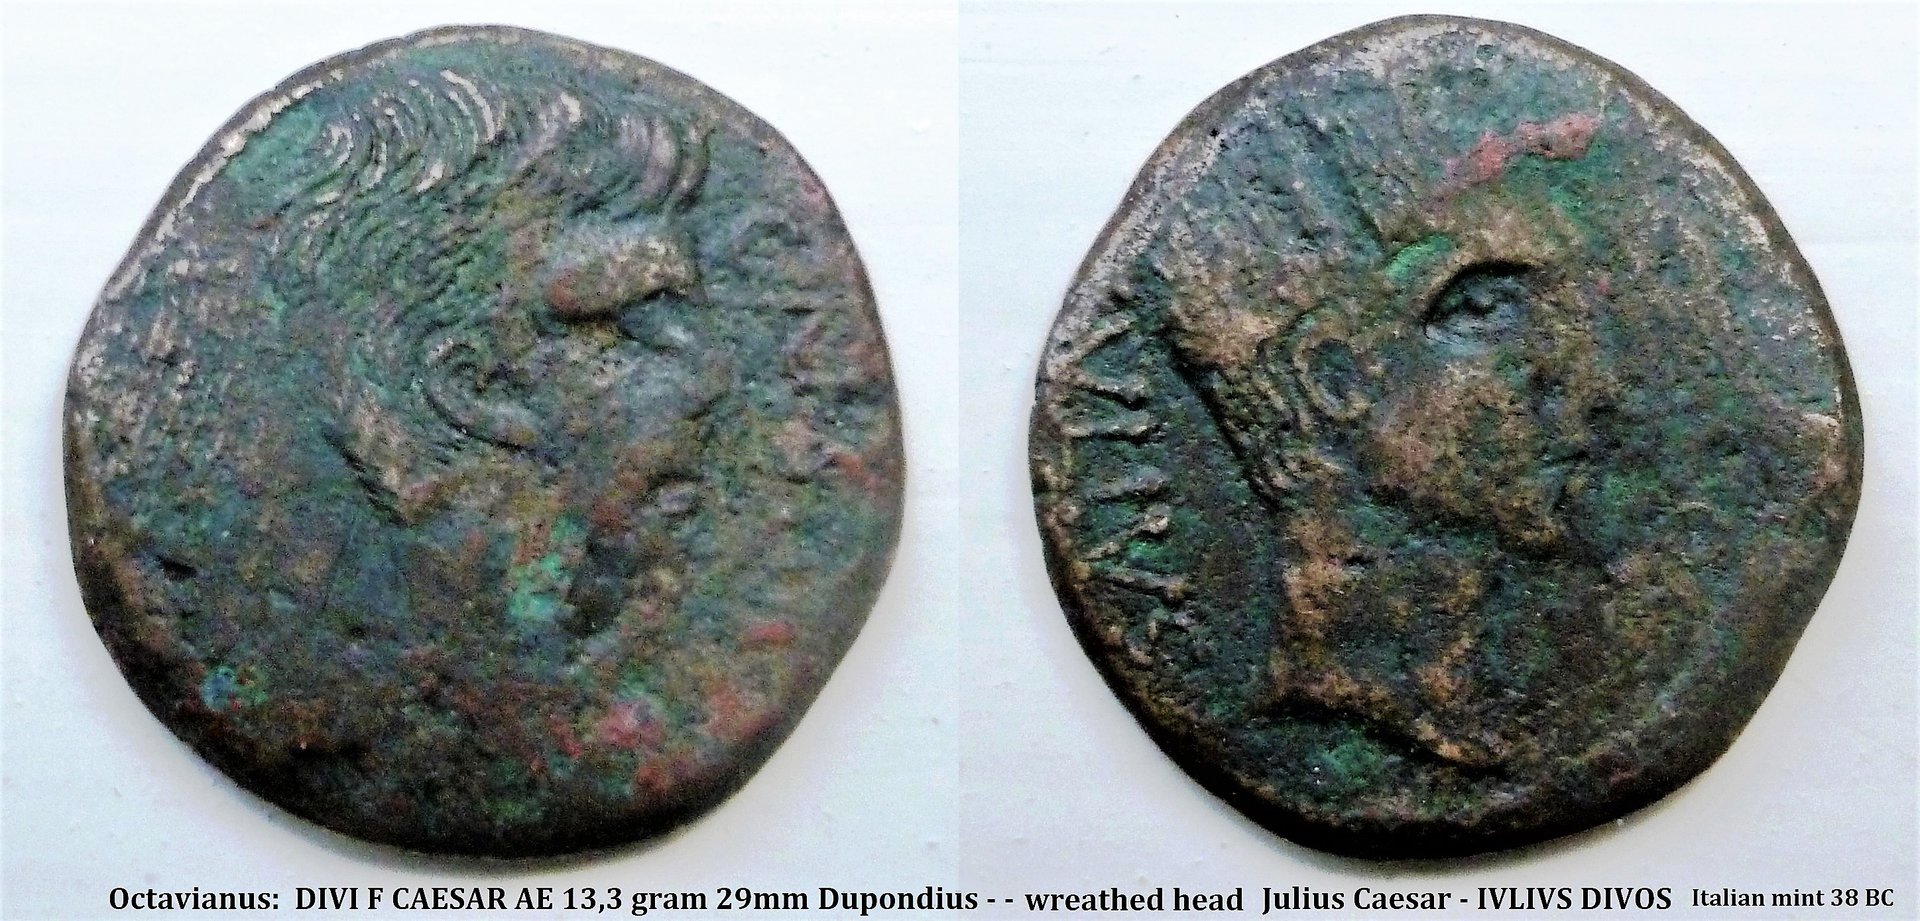 P1140140 julius caesar italian mint (2).jpg